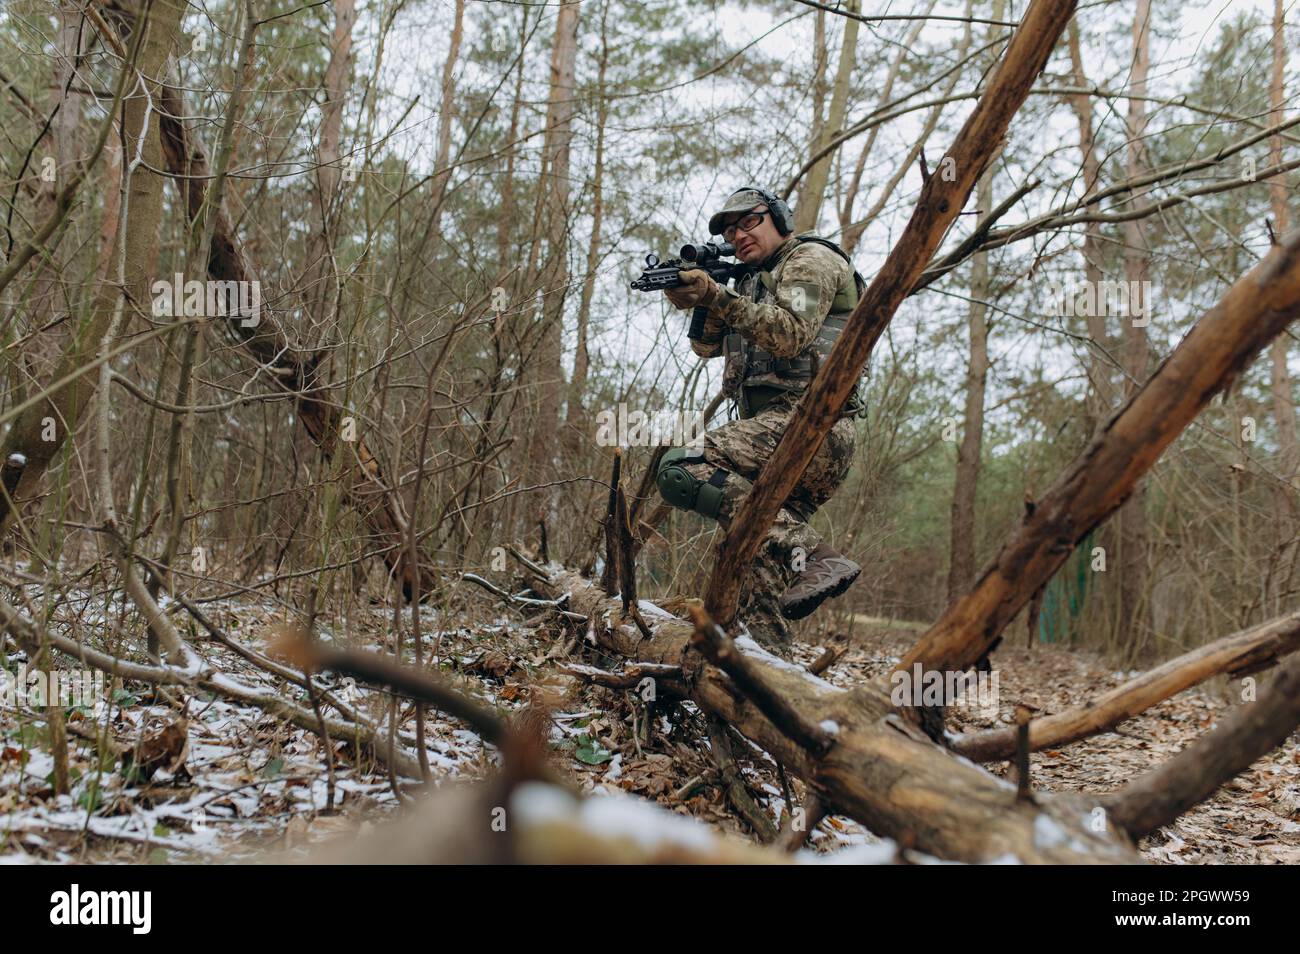 militaire en uniforme de camouflage sur les branches d'arbre, dans une embuscade avec une arme, une mitrailleuse. actions militaires un soldat dans la forêt. Banque D'Images